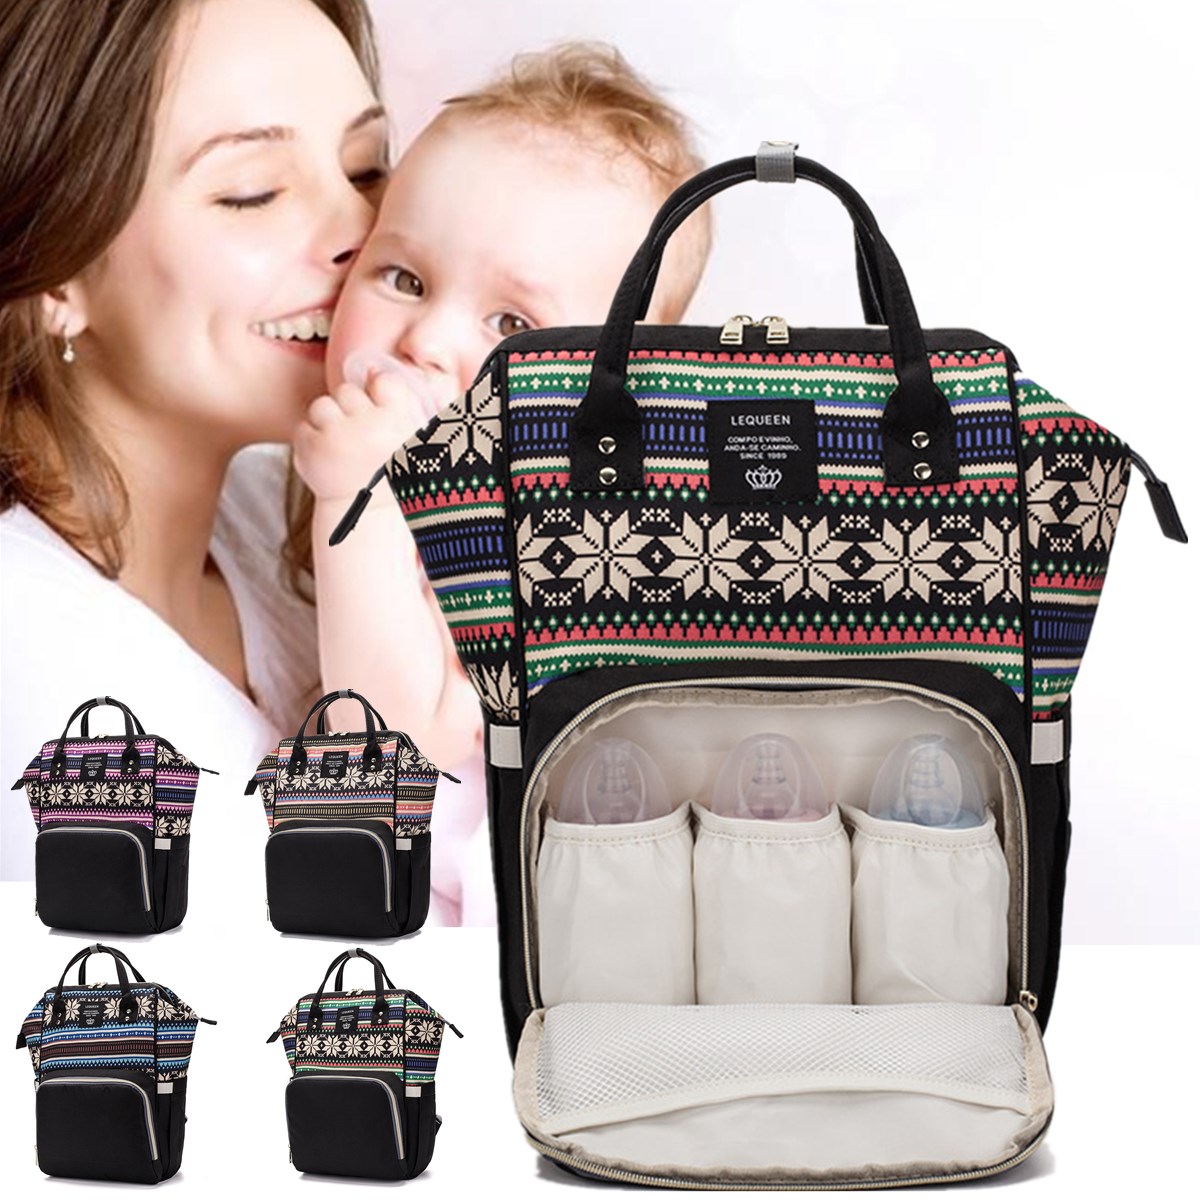 Outdoor-Mummy-Backpack-Nappy-Diaper-Bag-Travel-Storage-Bag-Vintage-Floral-Shoulder-Bag-1637111-1